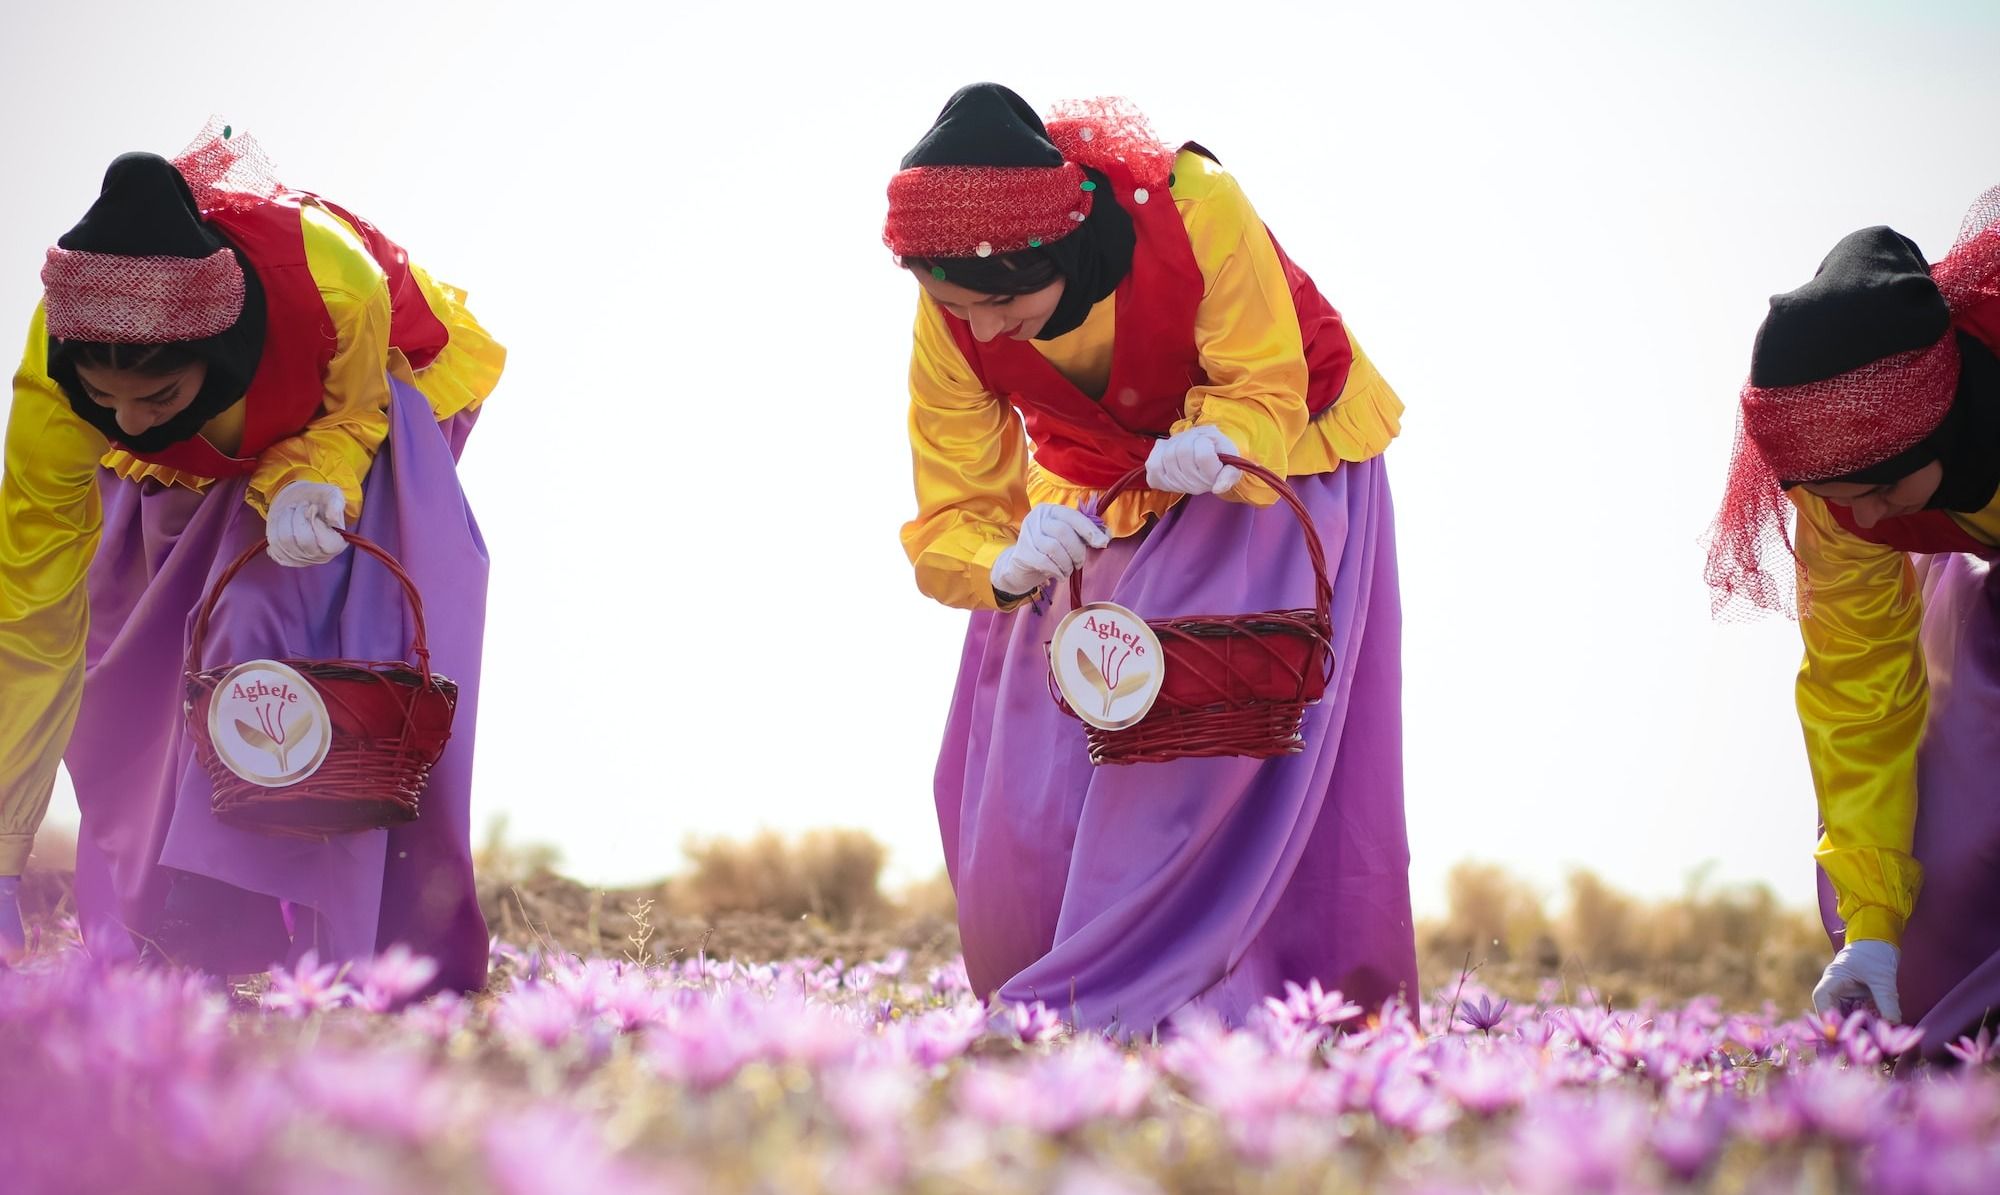 harvesting saffron threads